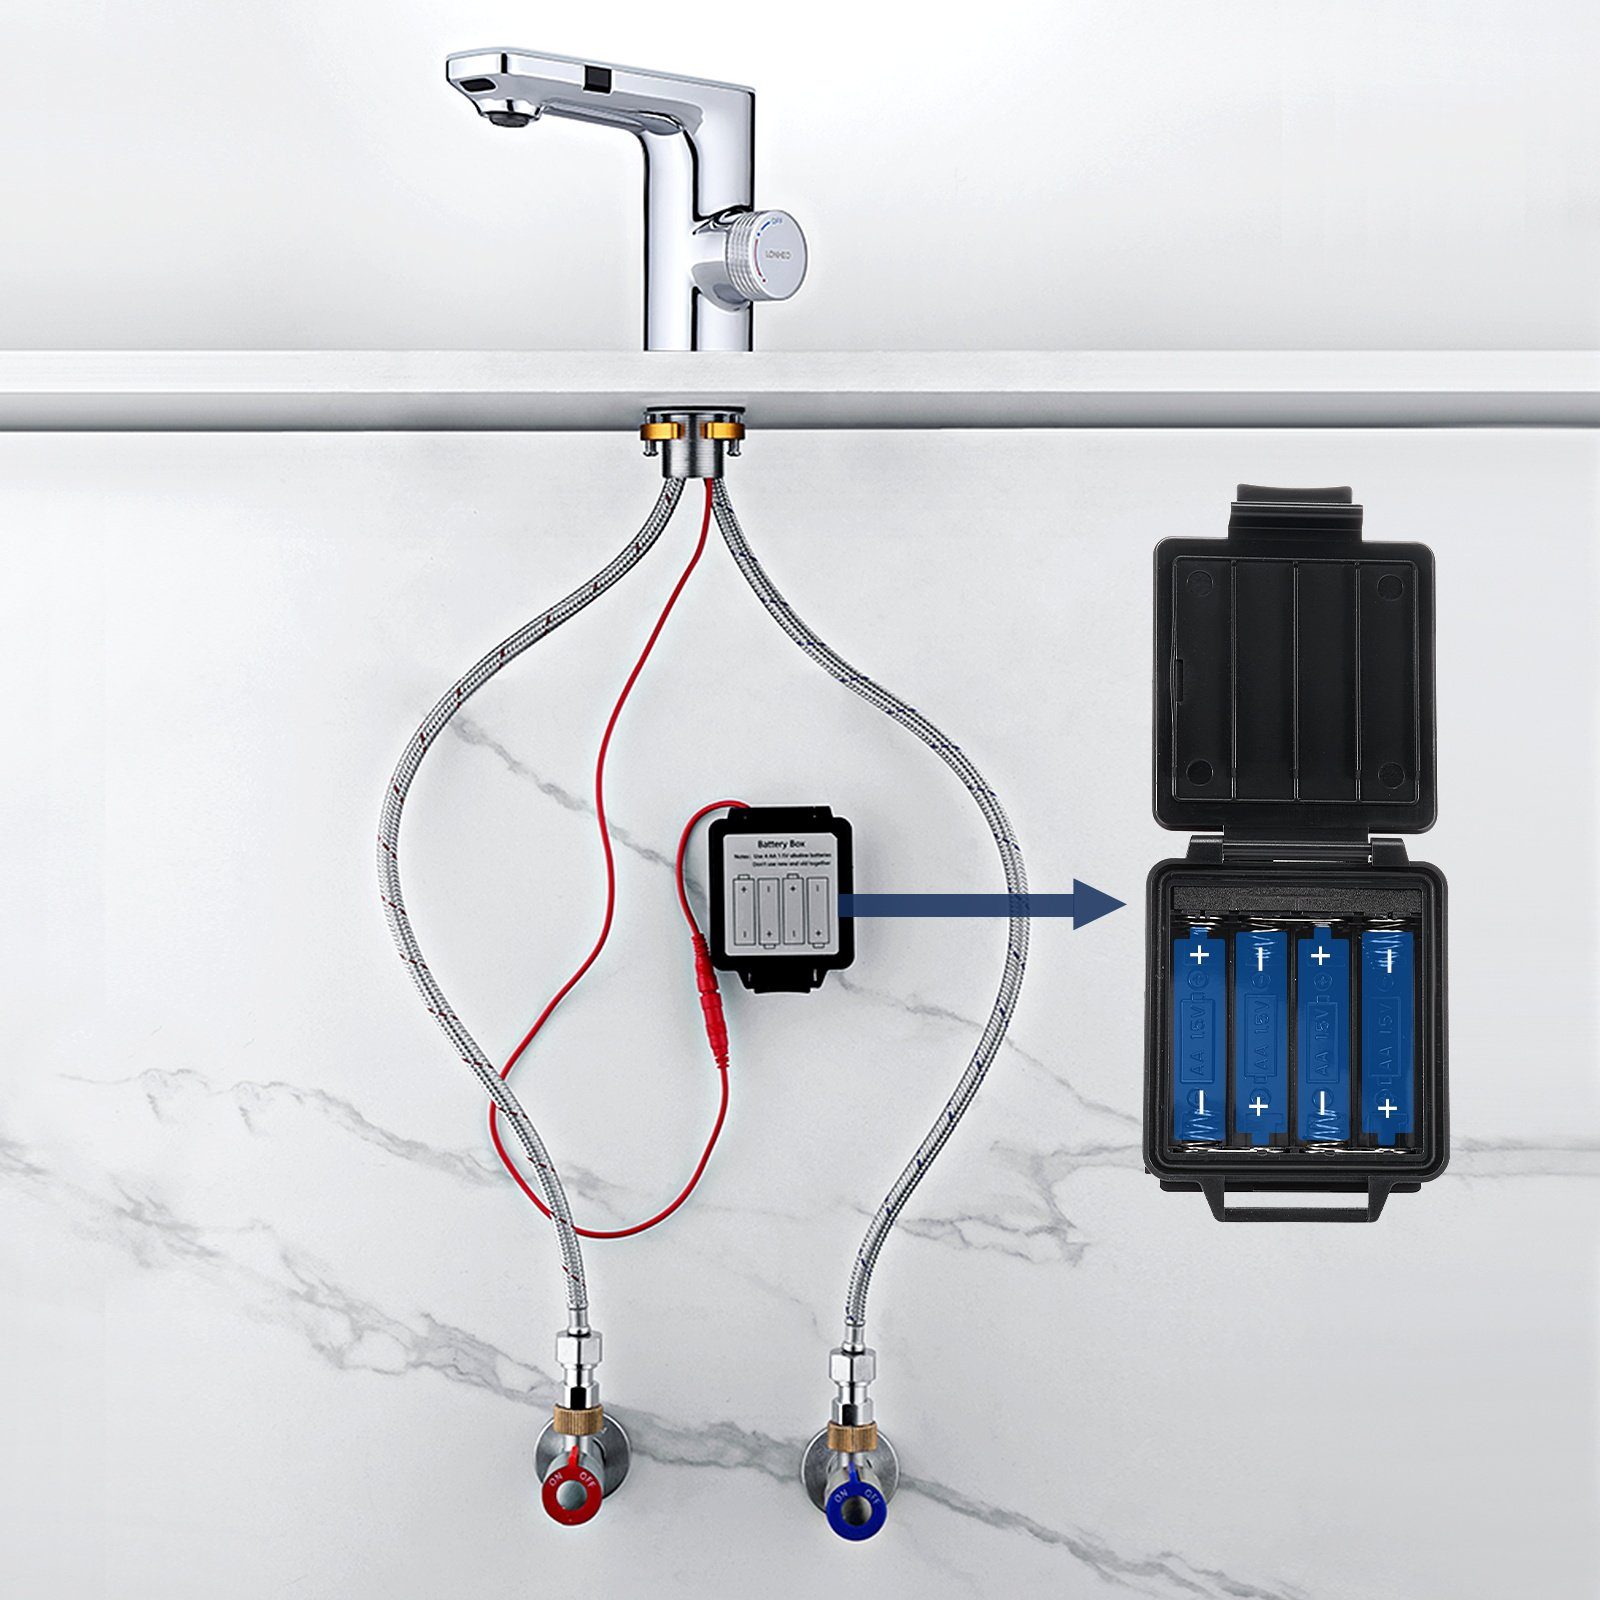 Lonheo Silber Mischbatterie IR Wasserhahn Automatik Sensor Waschtischarmatur Infrarot Waschbecken